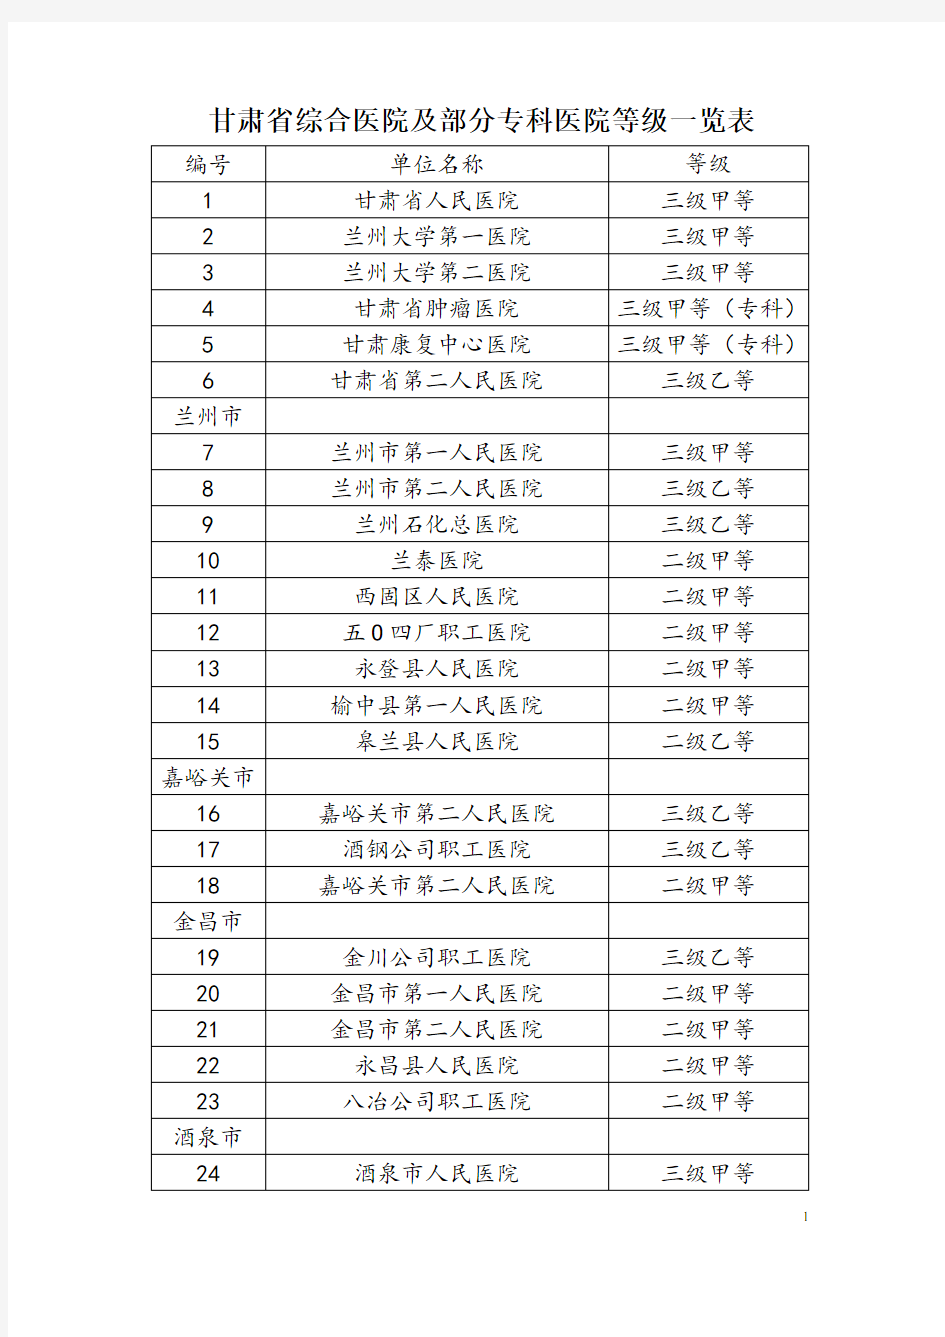 甘肃省综合医院及部分专科医院等级一览表